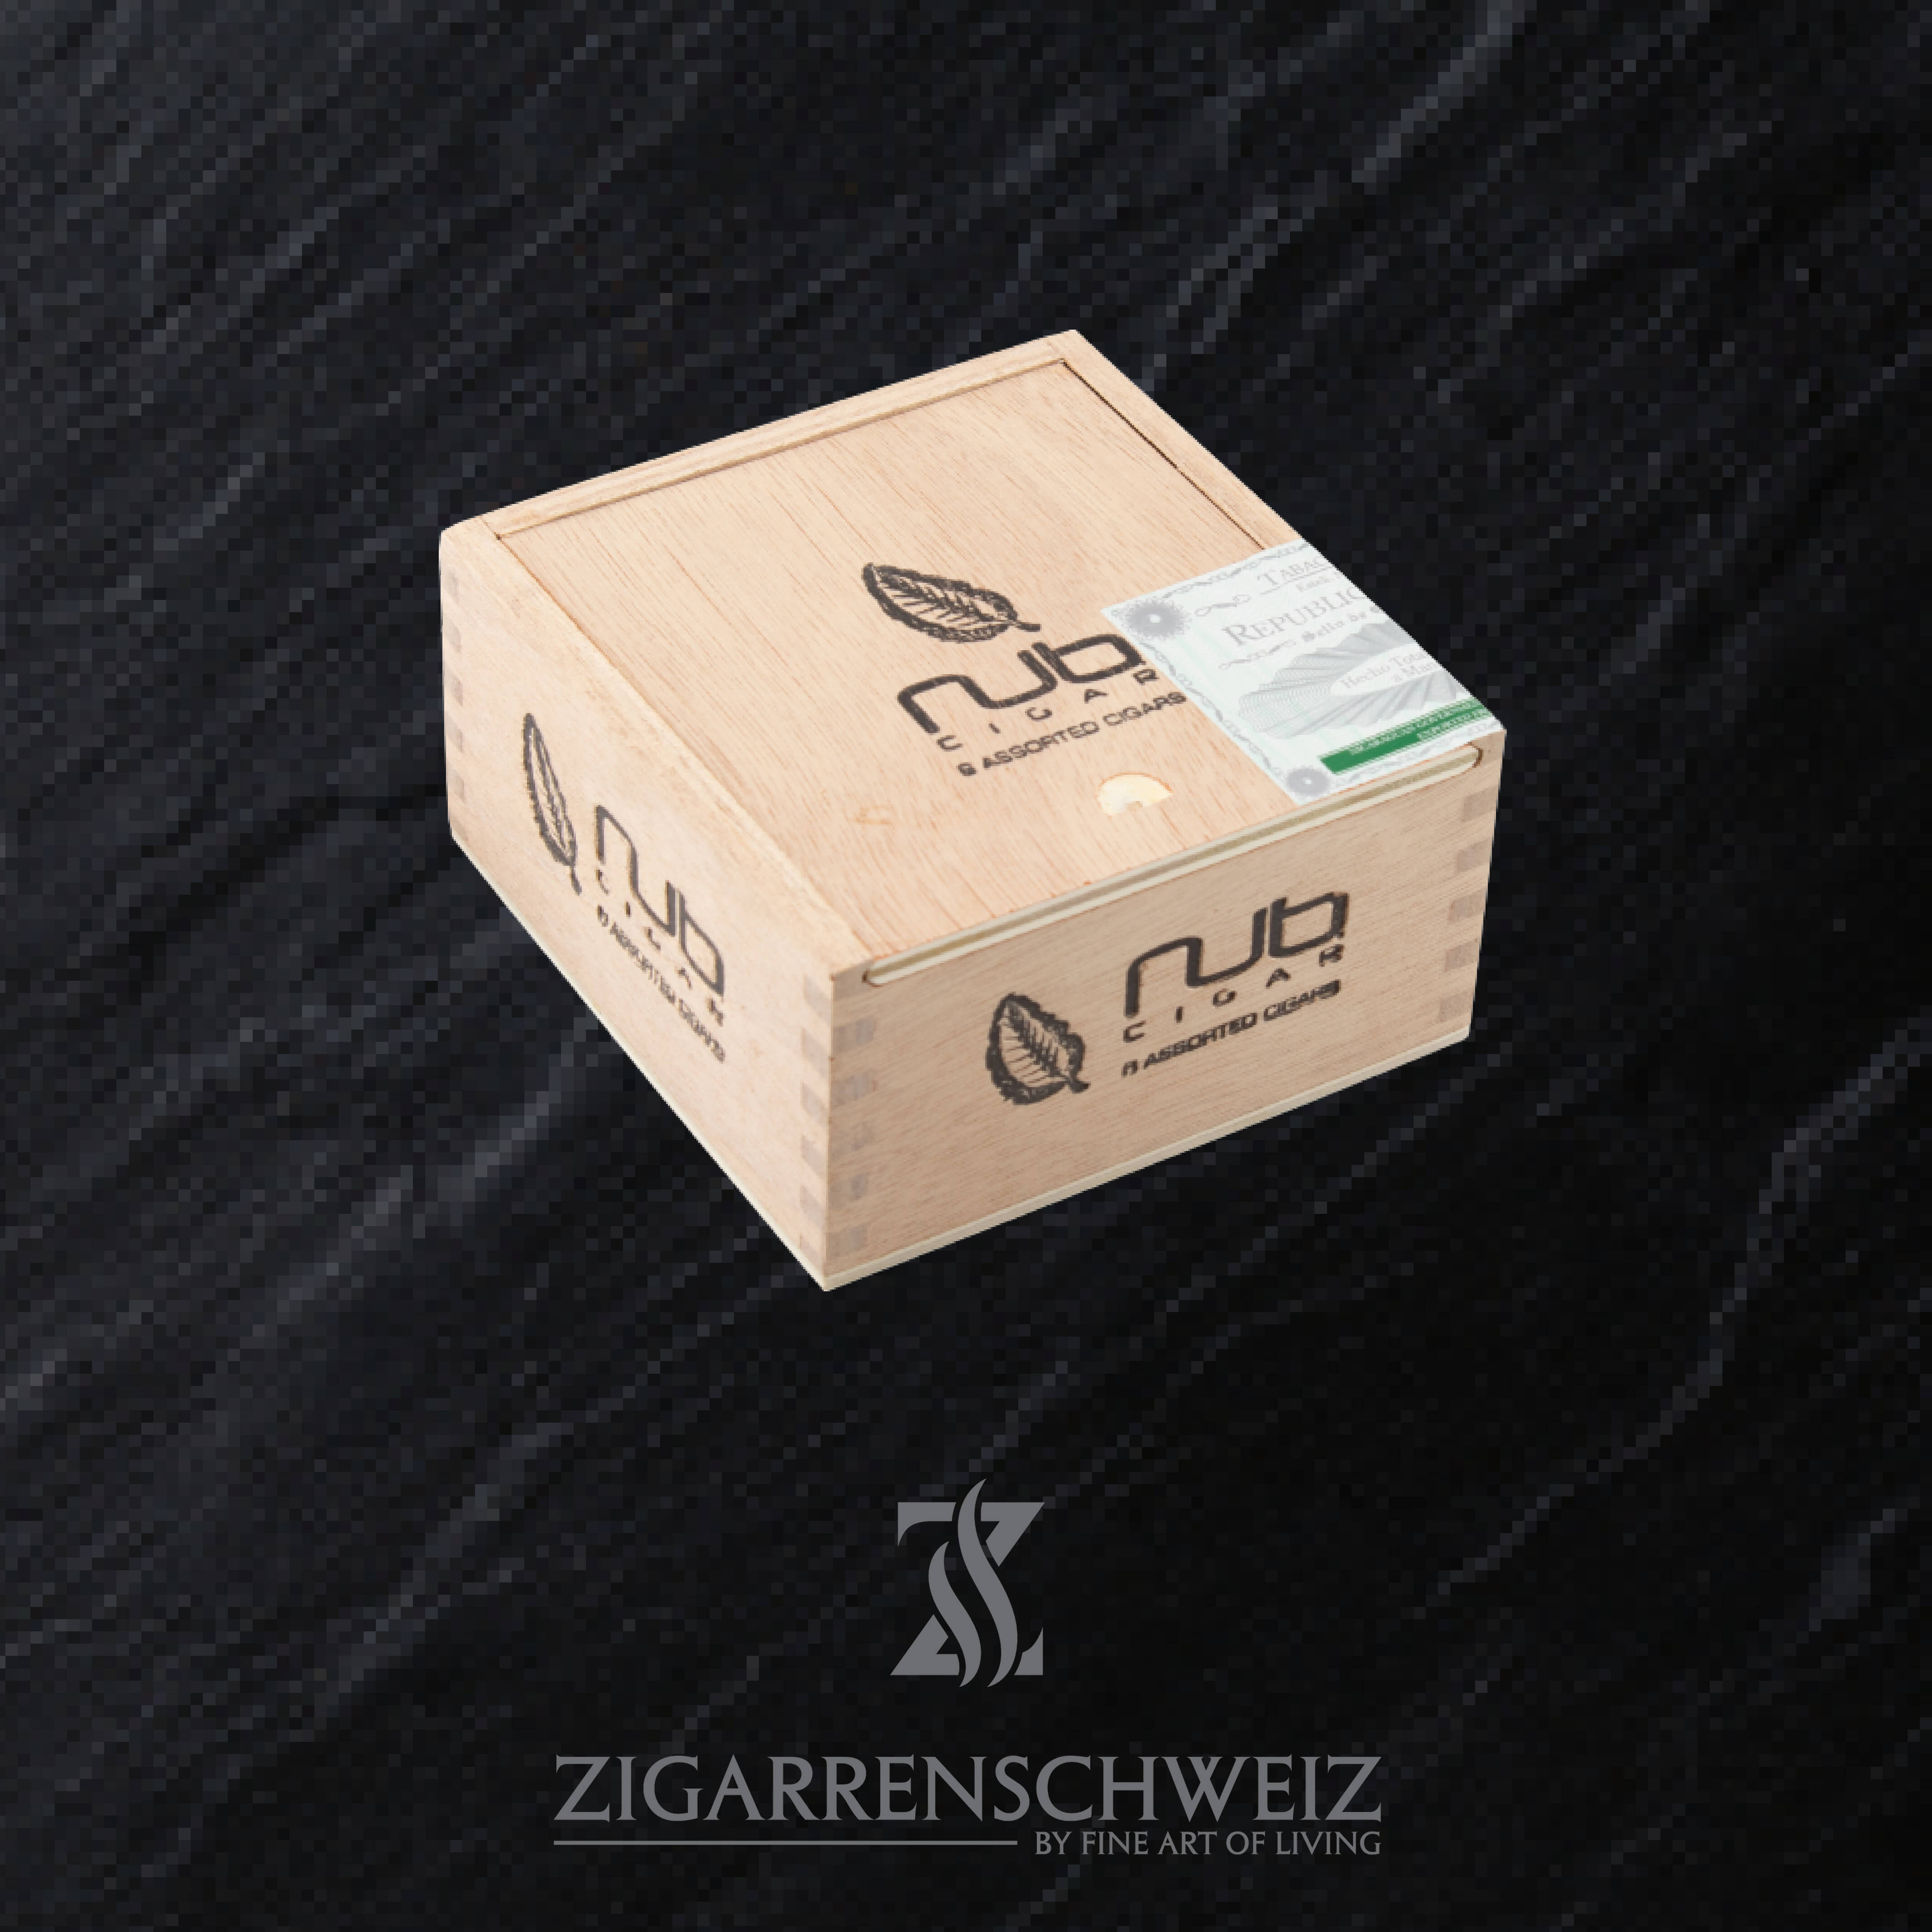 Best of NUB Zigarren Sampler aus dem Hause Oliva